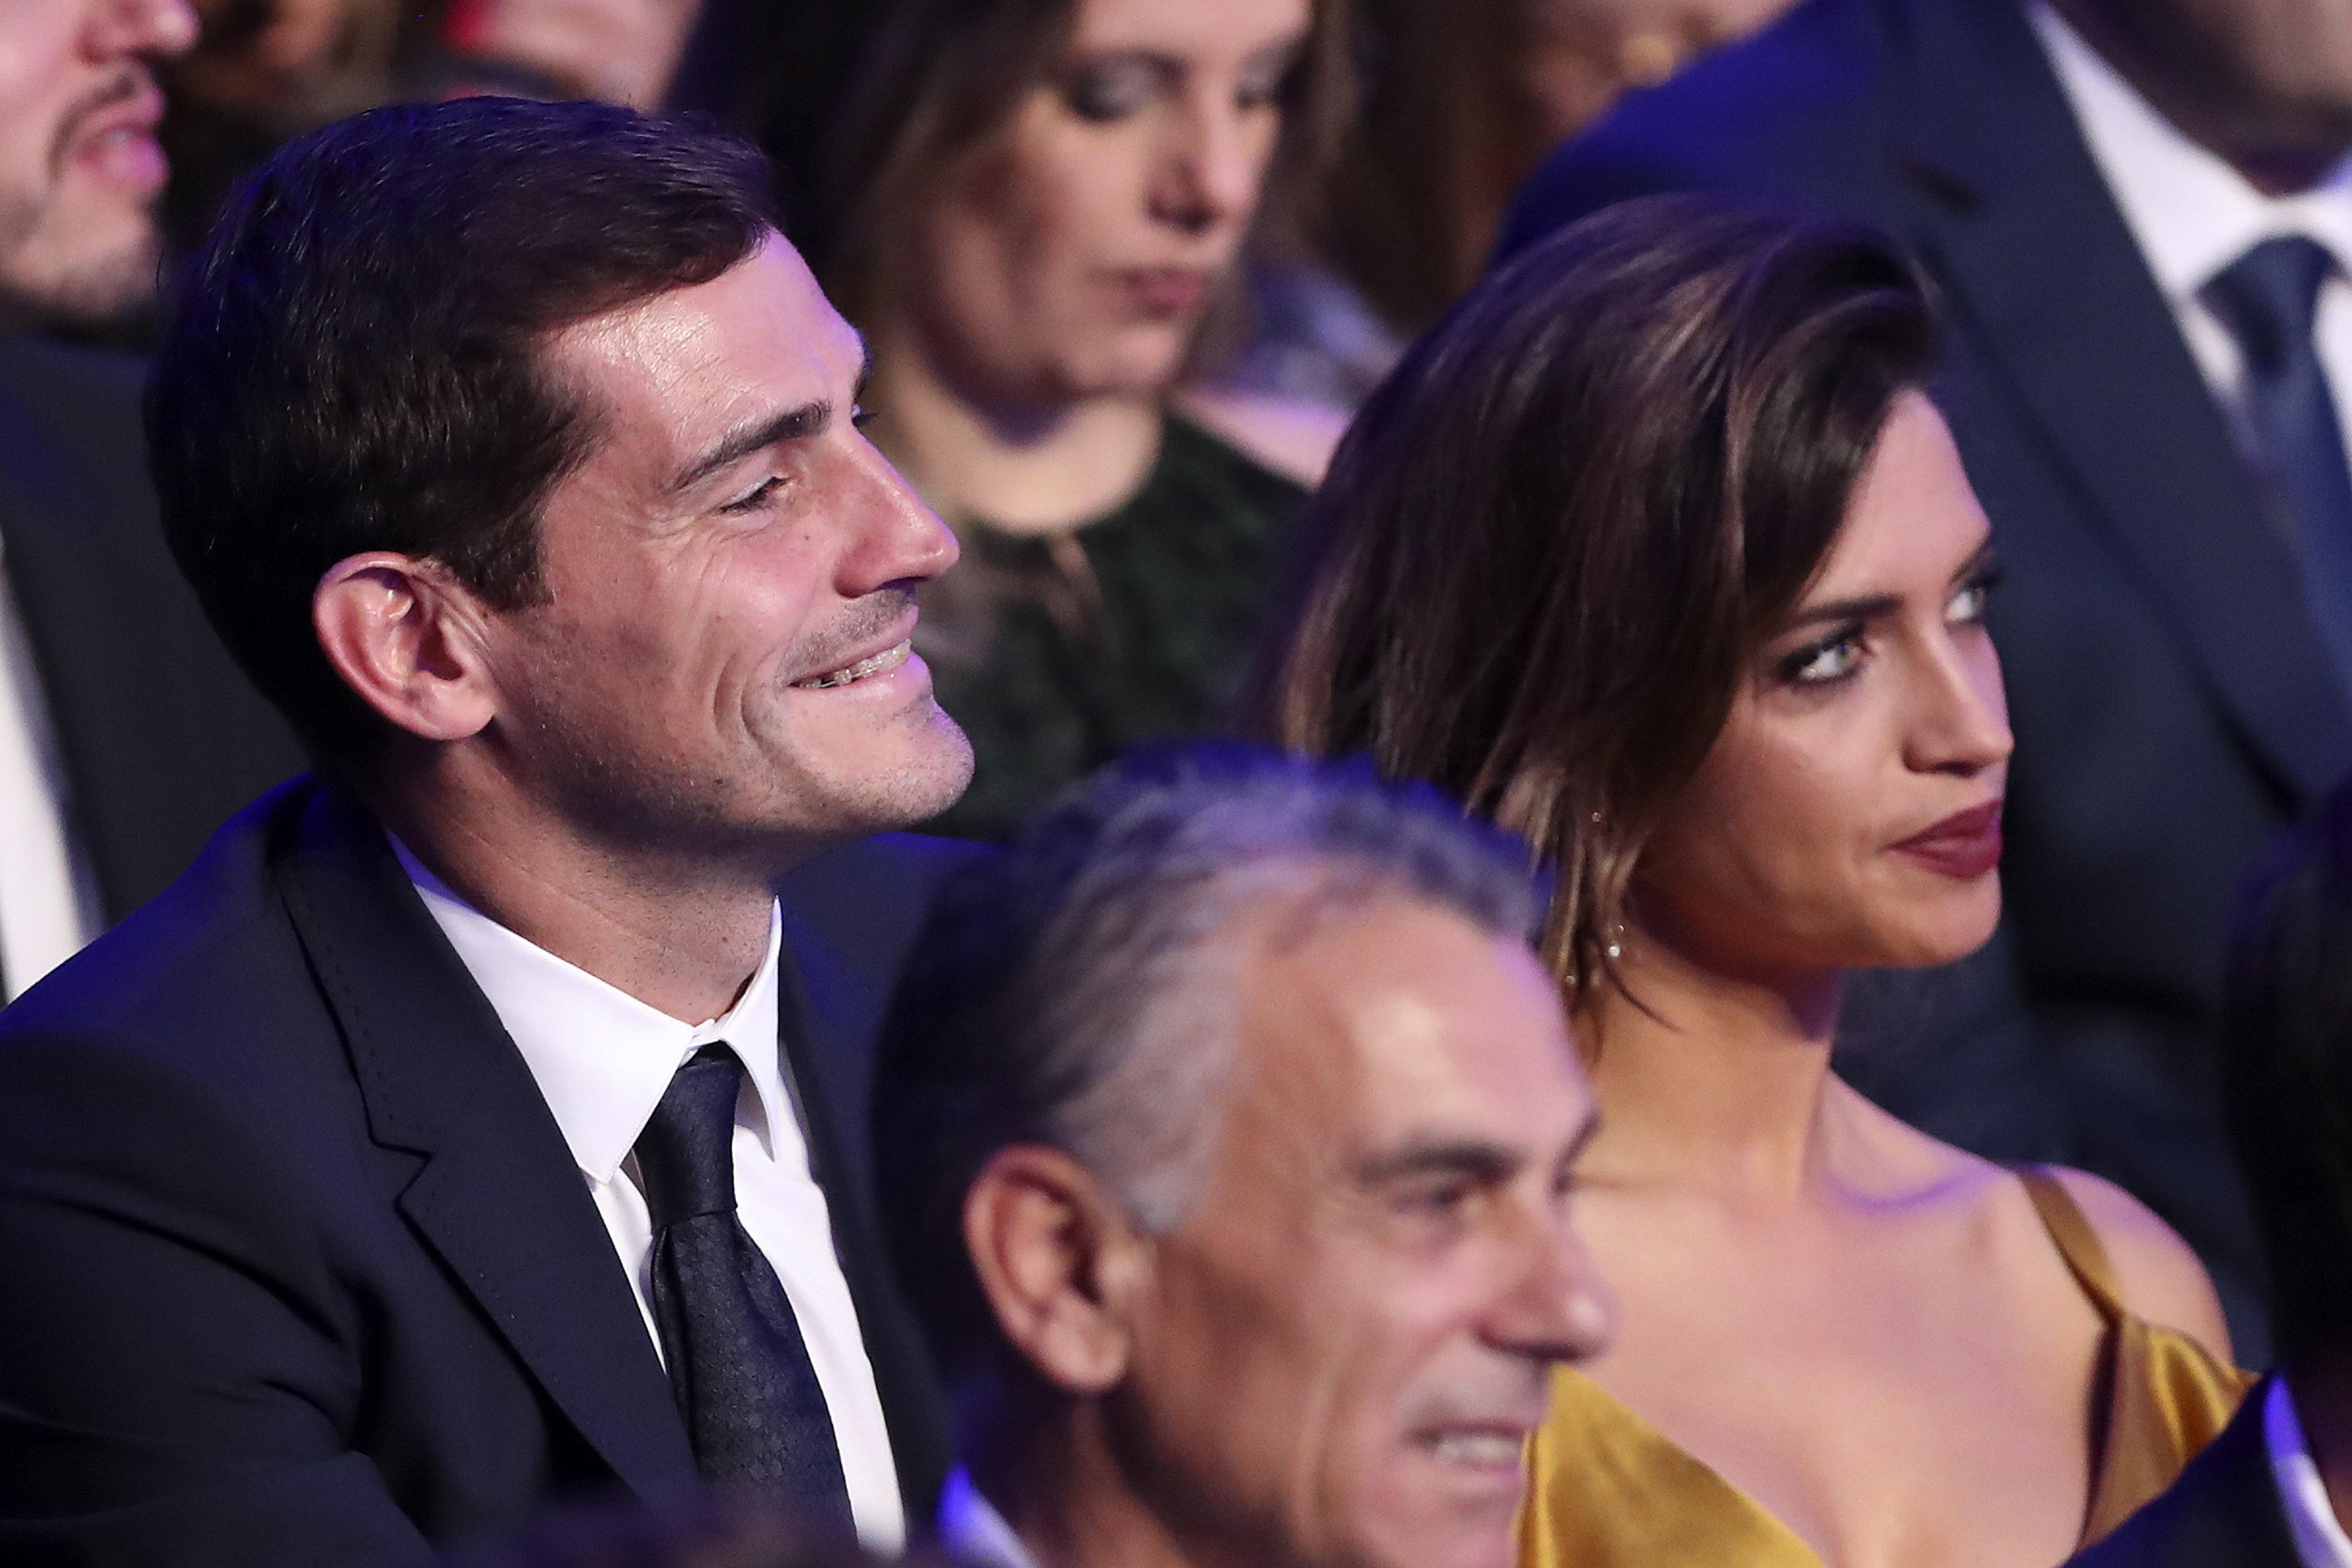 La nueva amiga íntima de Iker Casillas, una morena igualita a Sara Carbonero